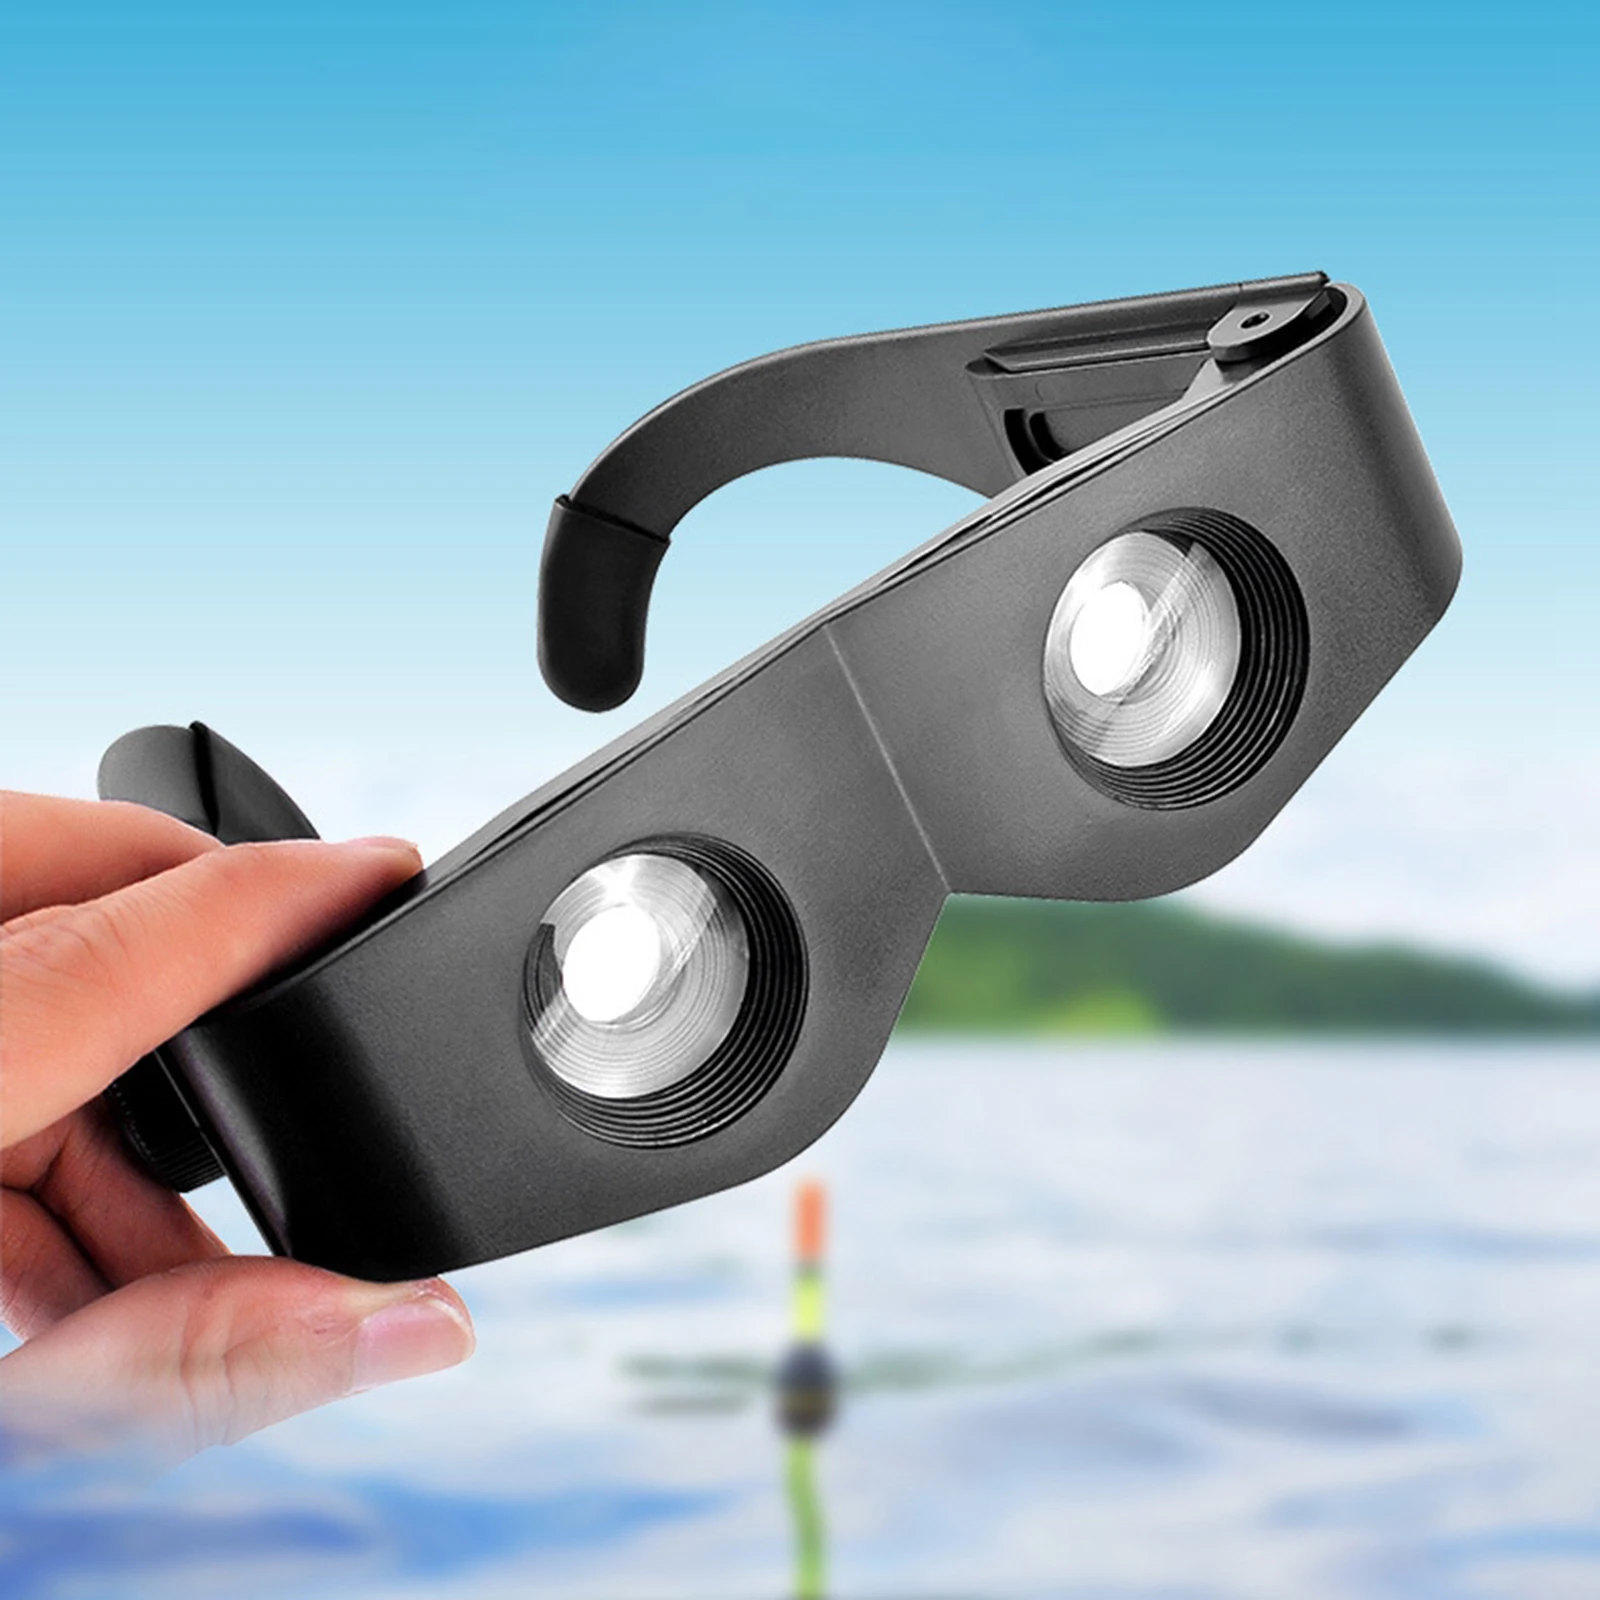 13184円 【83%OFF!】 送料無料 Professional Hands-Free Binocular Glasses for Fishing Bird Watching Sport